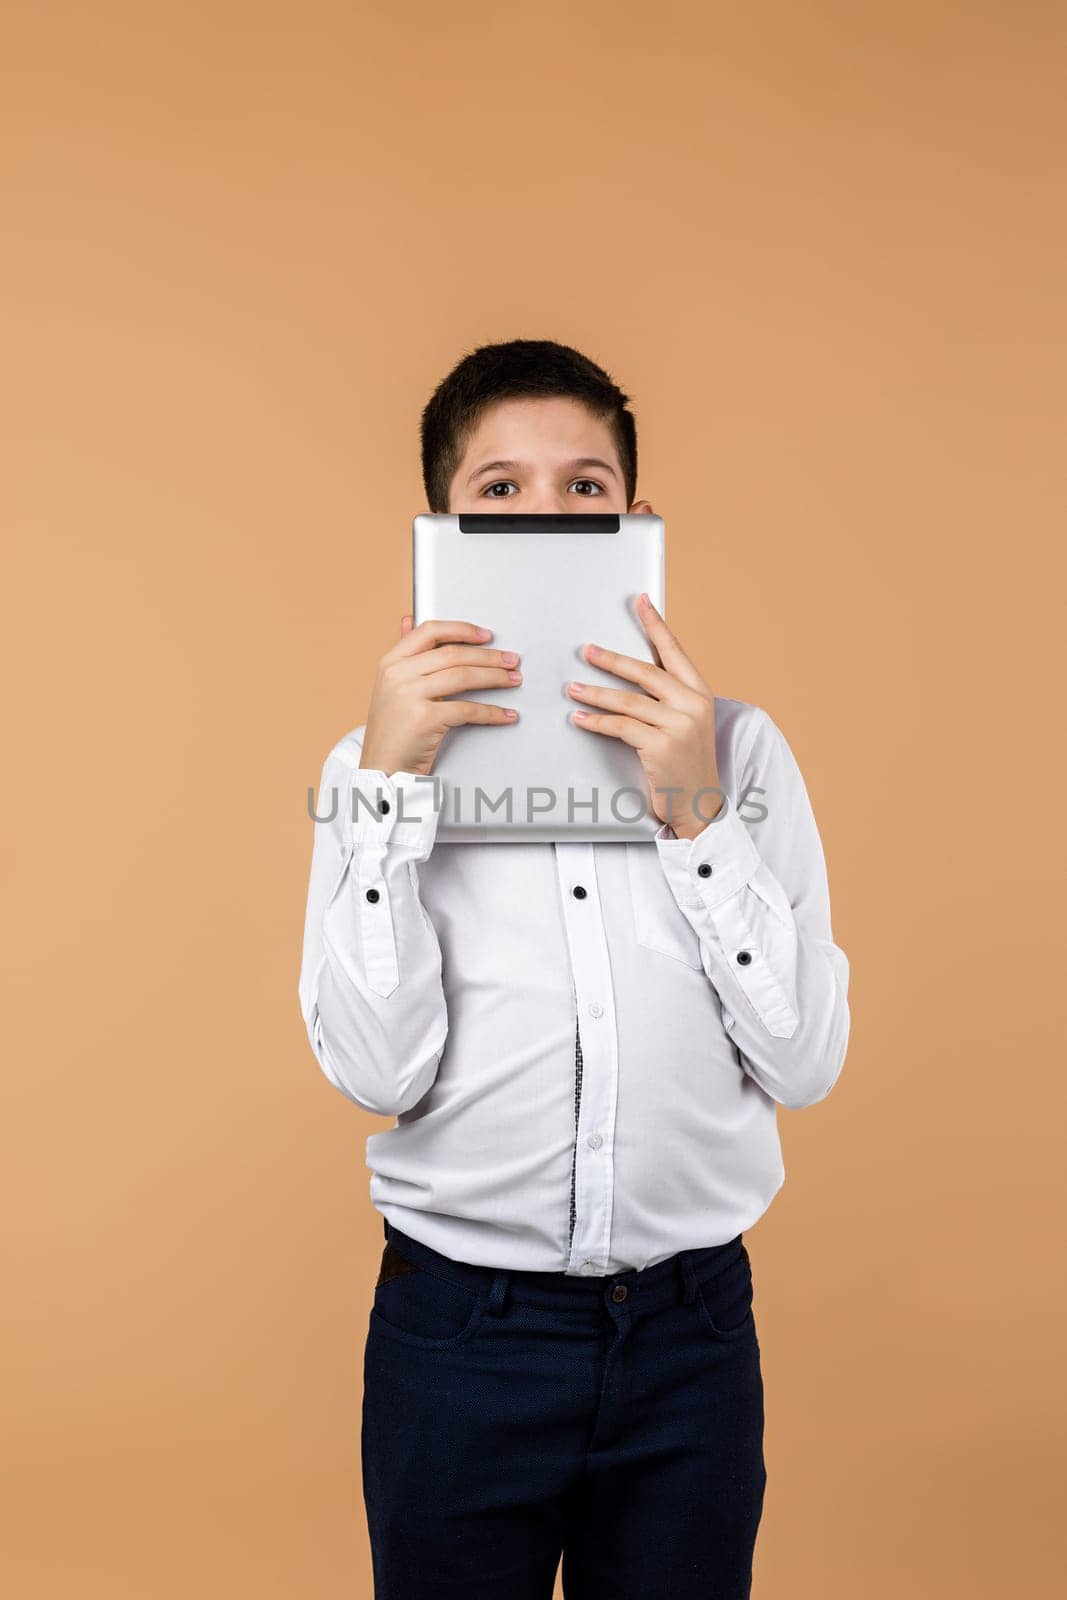 Emotional schoolboy holding digital tablet by erstudio